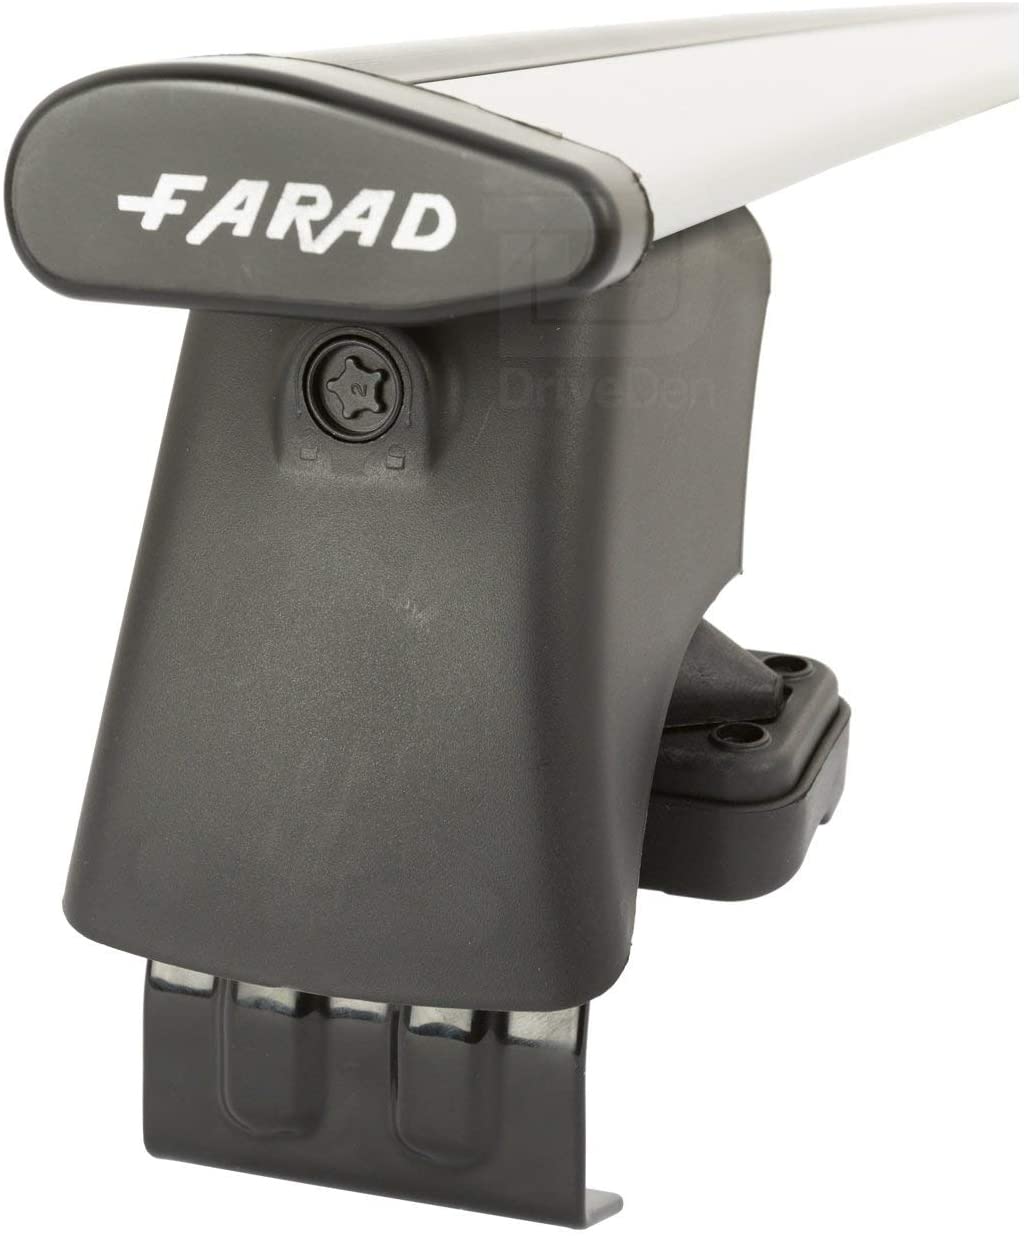 FARAD-Kit H2 per barre portatutto - Audi A6 2005-2011 (senza corrimano)